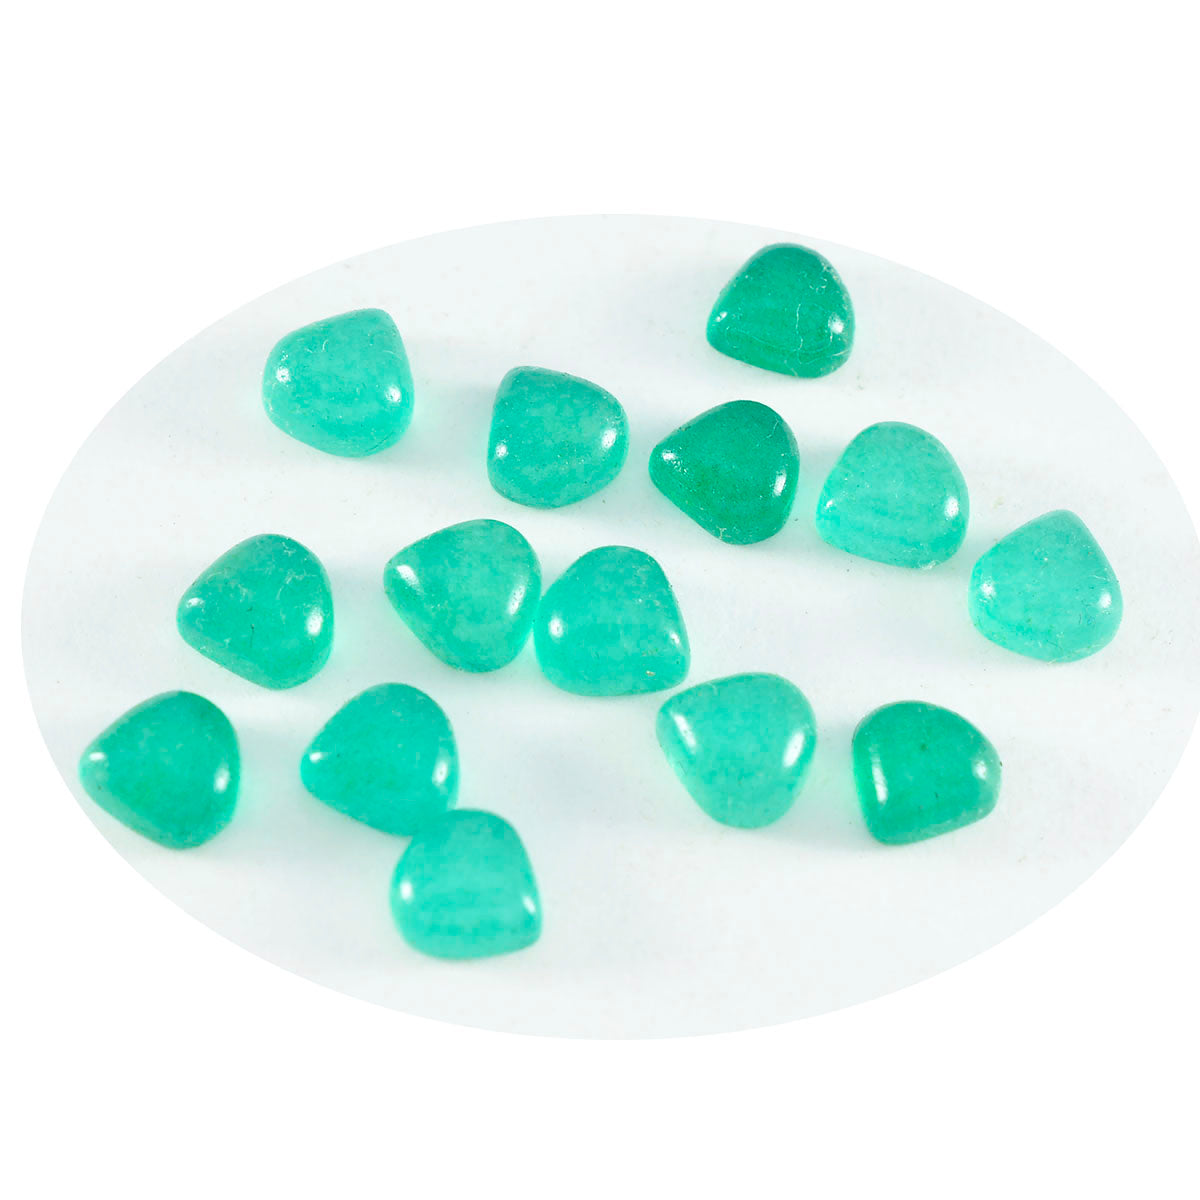 Riyogems 1pc cabochon onyx vert 4x4 mm en forme de coeur jolie pierre précieuse en vrac de qualité